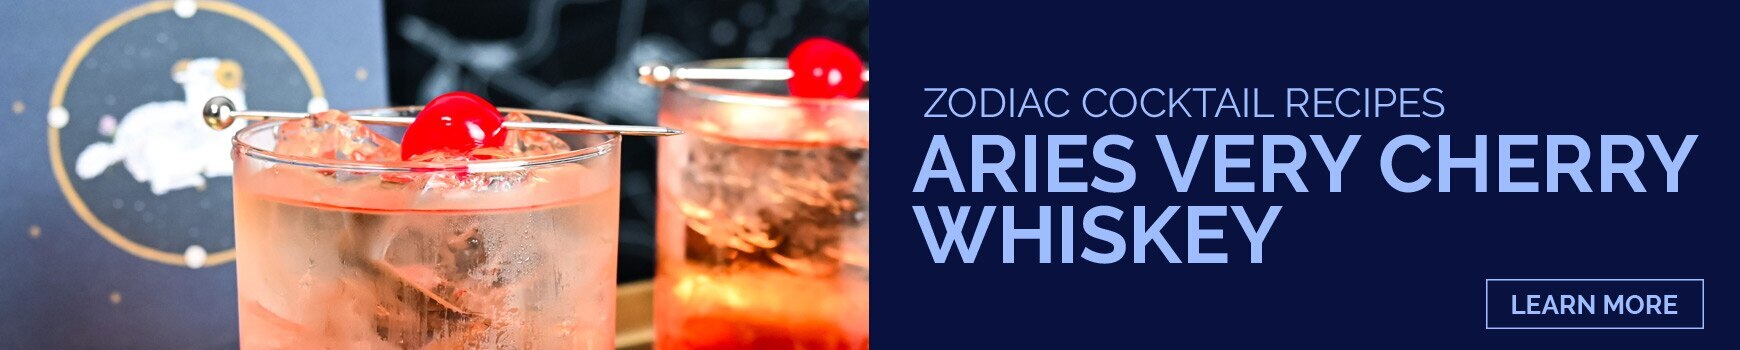 Aquarius - Zodiac Cocktail